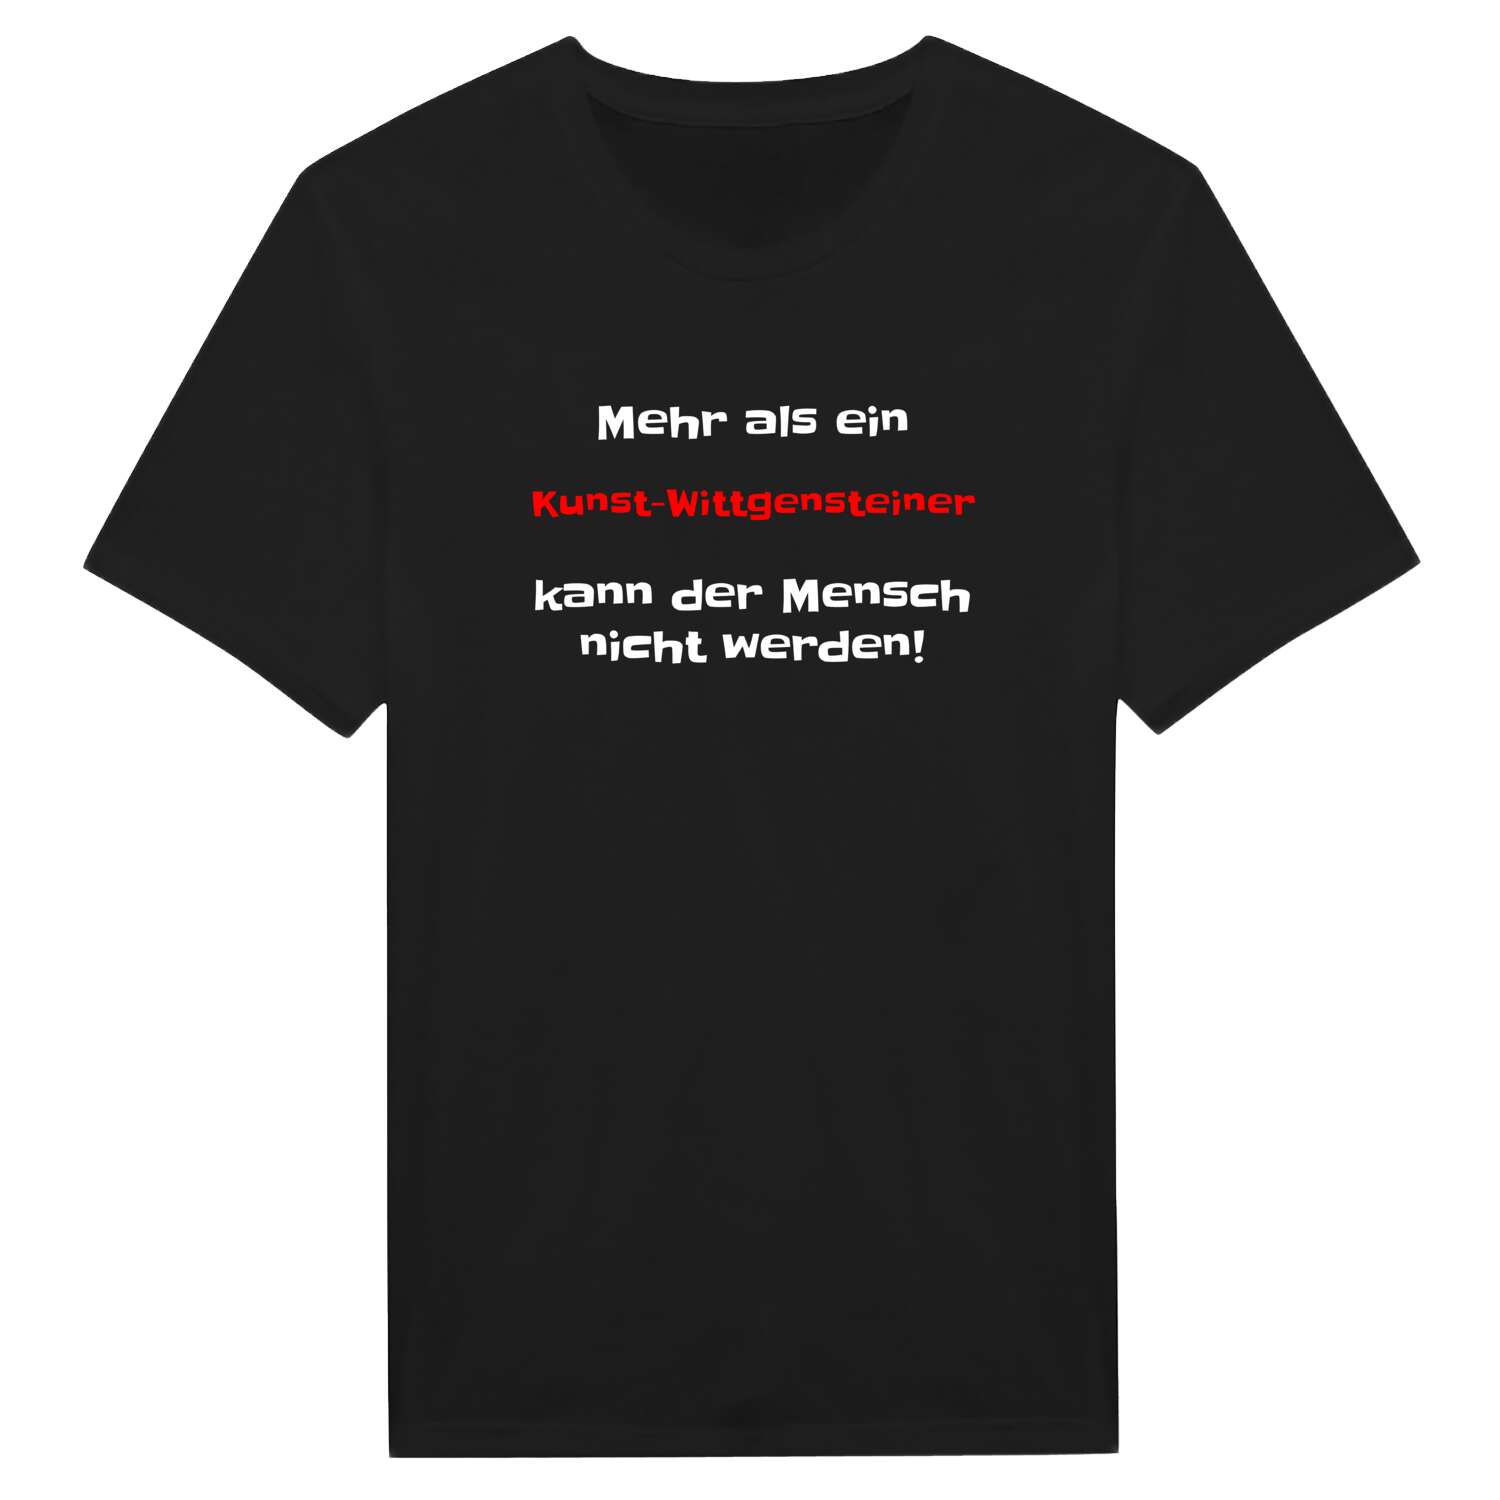 Kunst-Wittgenstein T-Shirt »Mehr als ein«